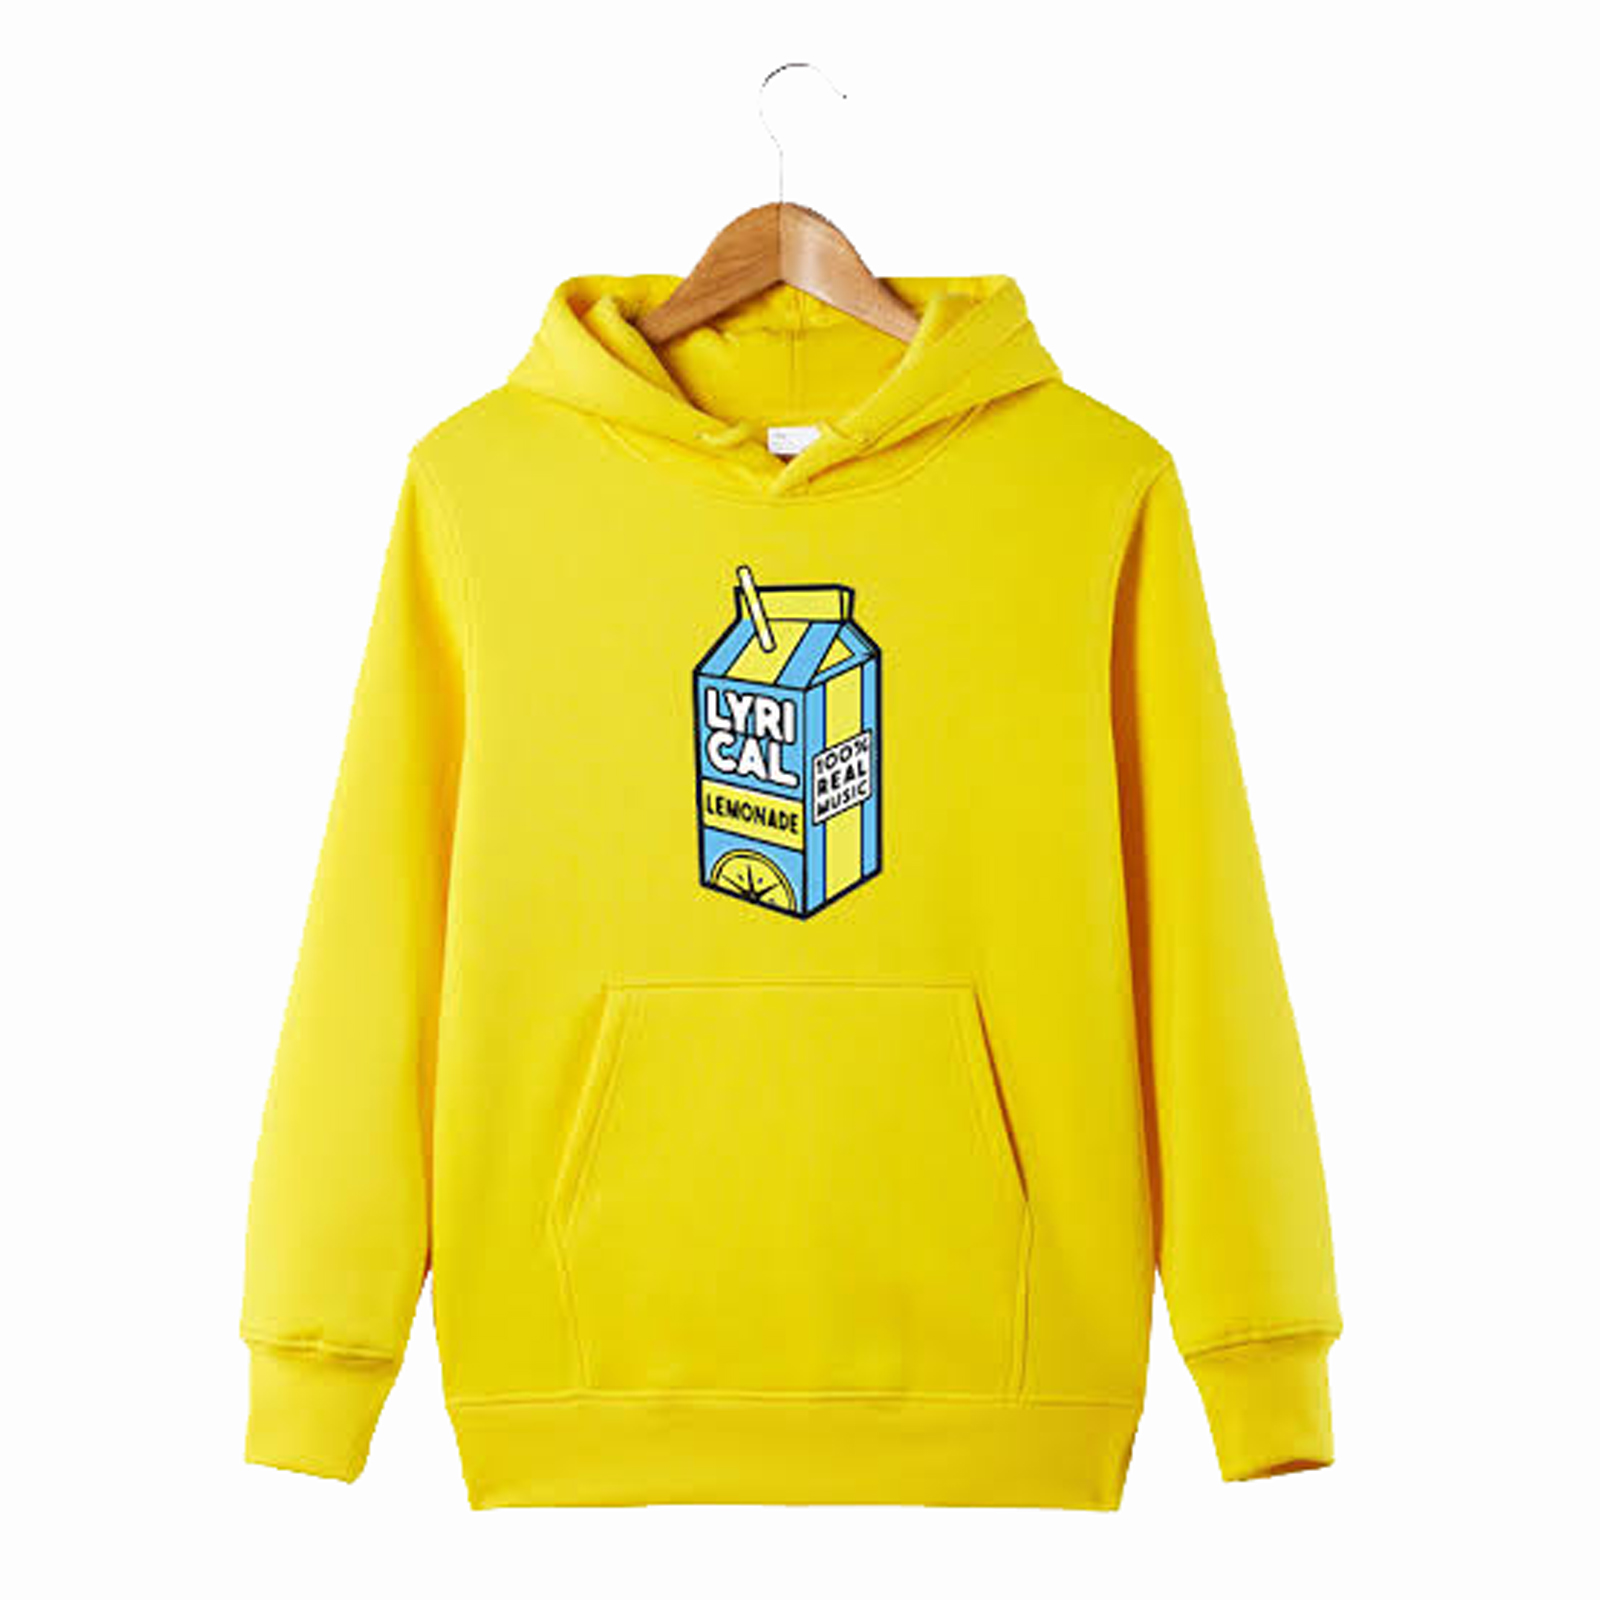 lyrical lemonade hoodies